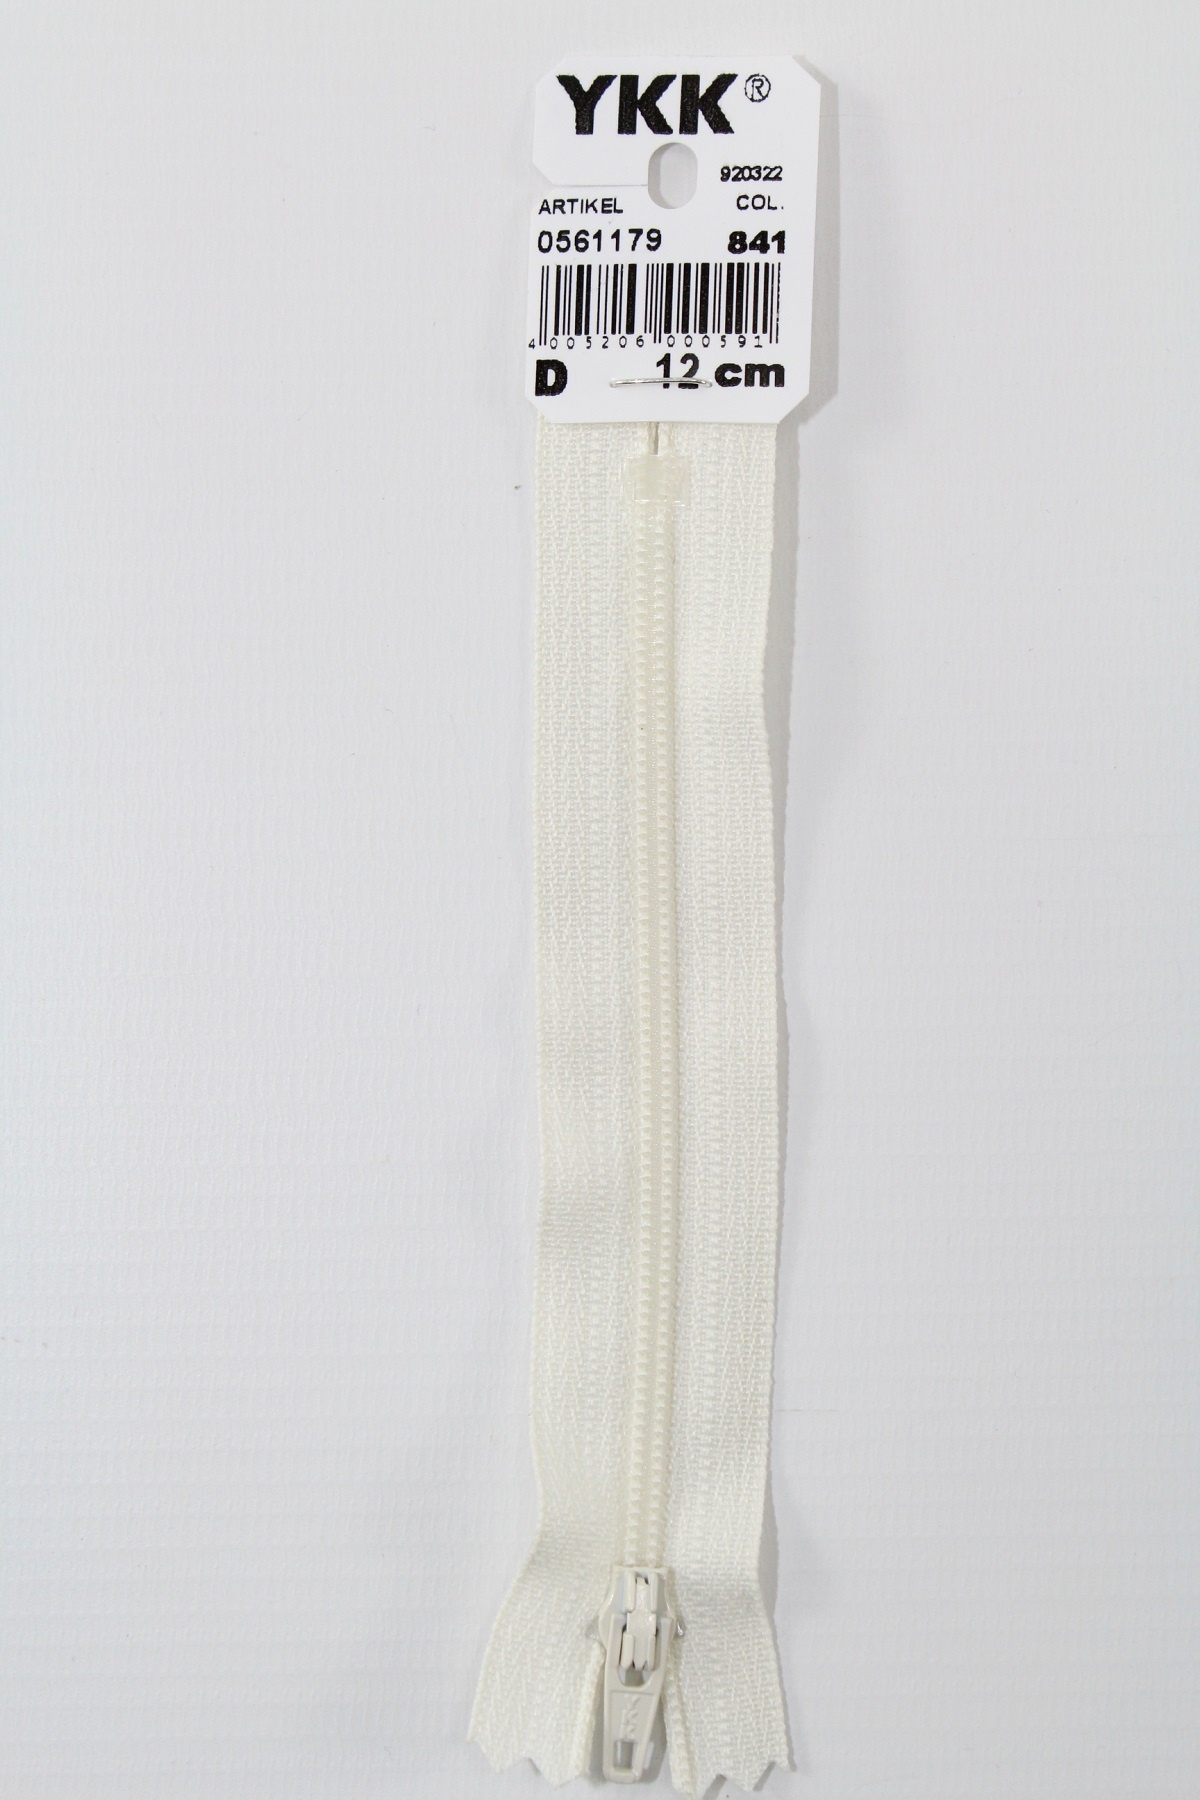 YKK-Reissverschluss 12cm-60cm, nicht teilbar, rohweiss